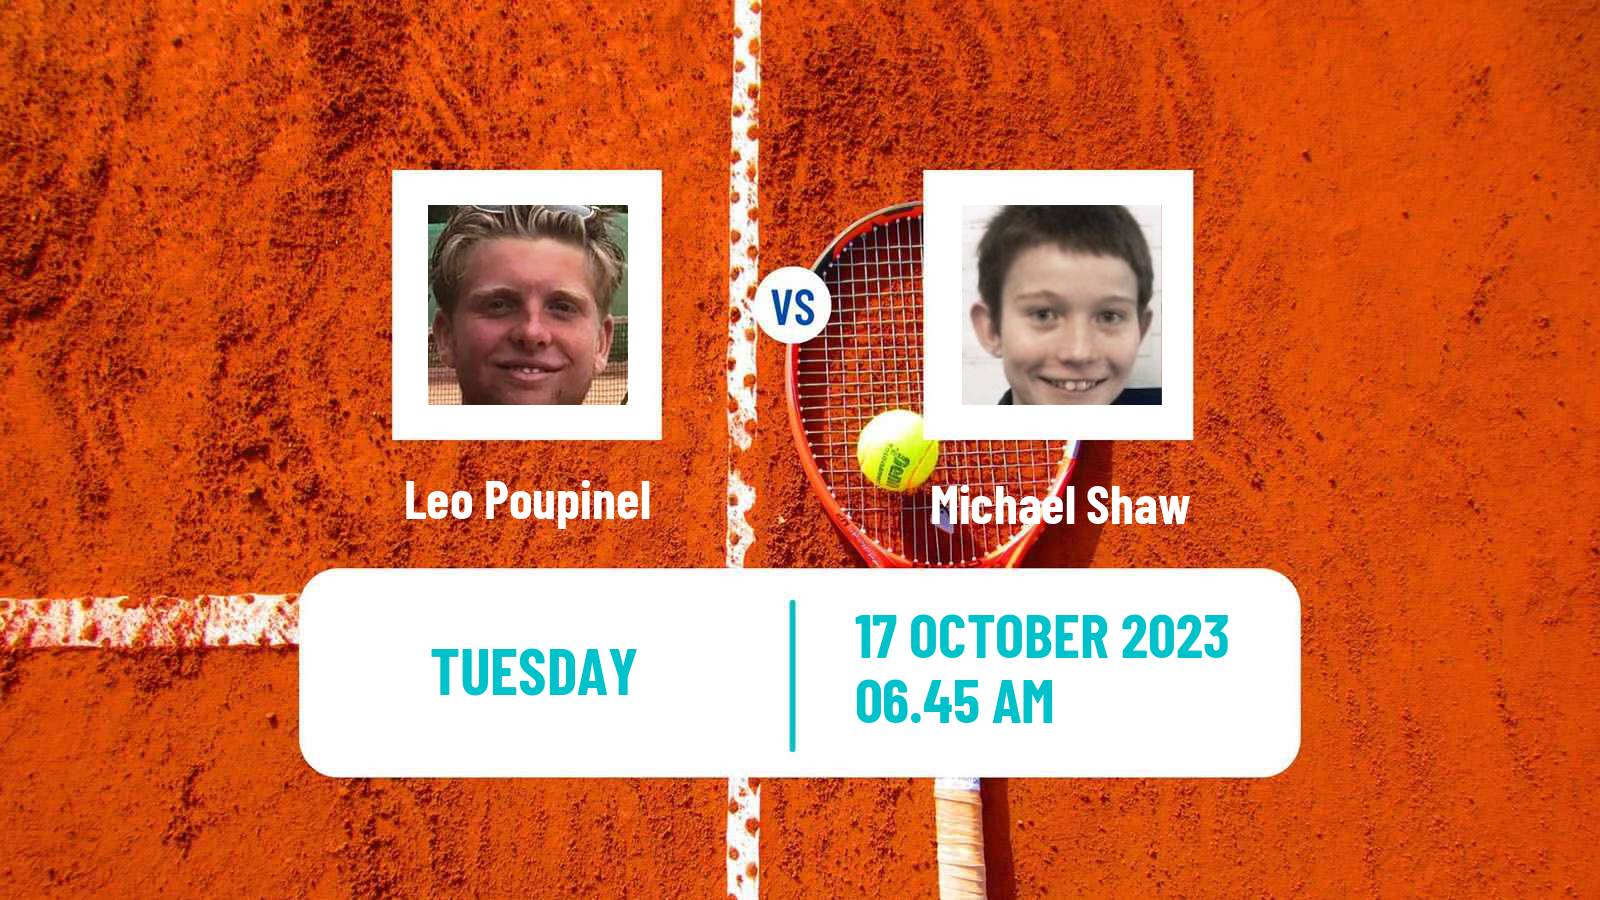 Tennis ITF M25 Edgbaston Men Leo Poupinel - Michael Shaw